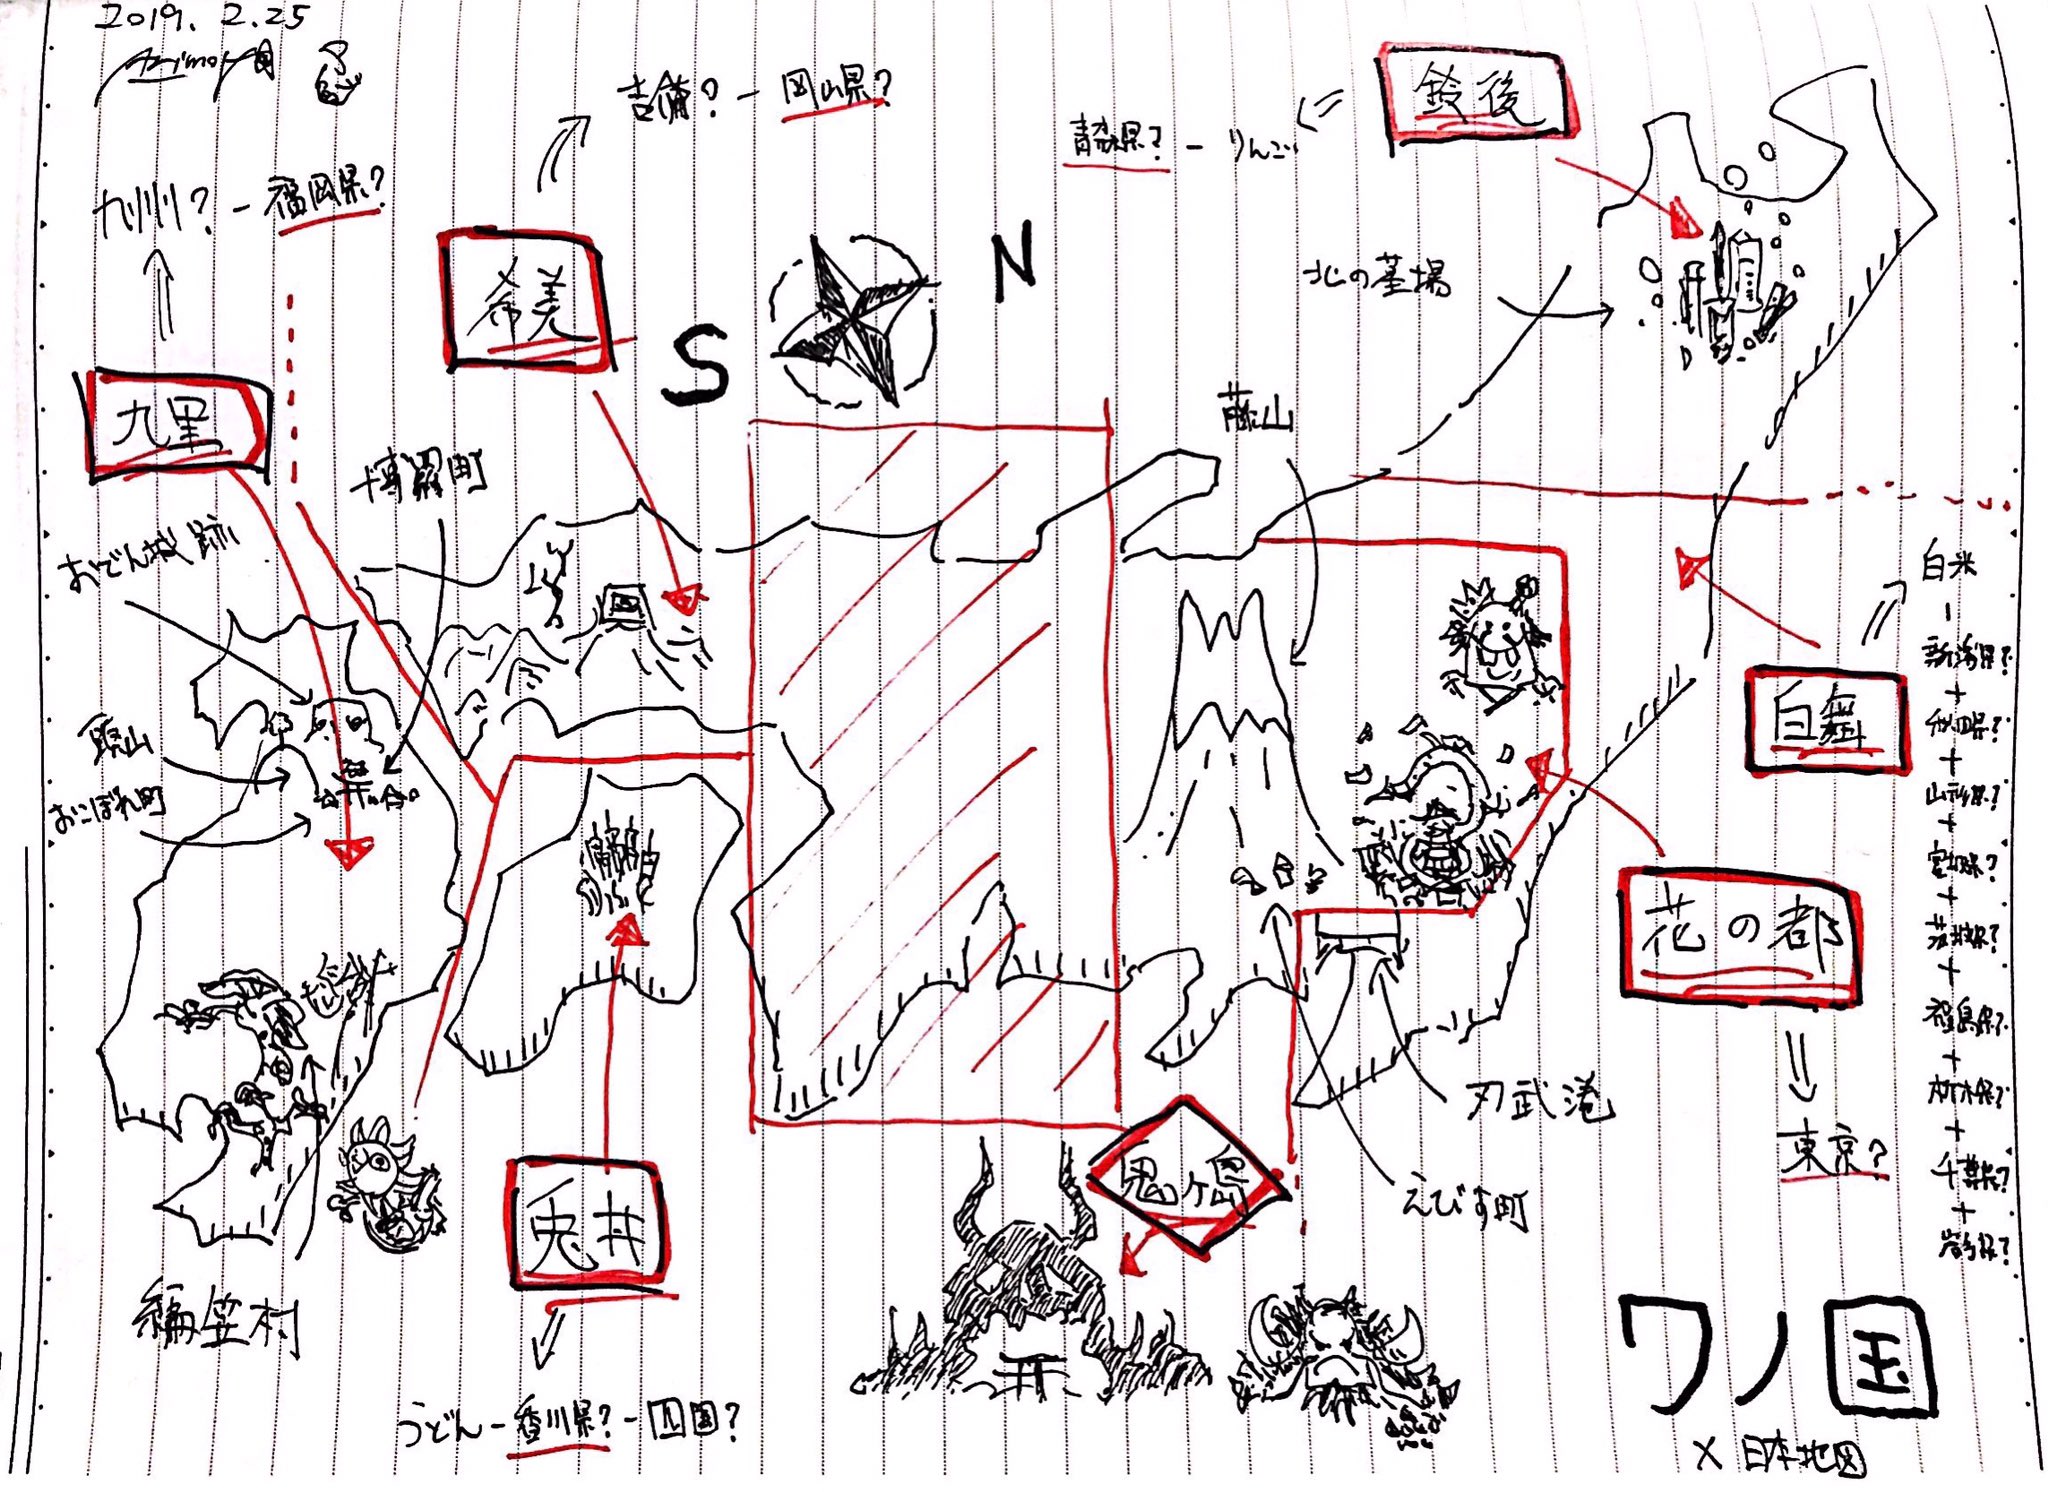 ﾎﾟｰﾈｸﾞﾘﾌのarimo 火祭りﾏﾃﾞｱﾄ6日 One Piece 934話 ワノ国の地図 が判明したので六つの郷の地名と位置を覚えるために日本地図と照らし合わせ 京都麦わら道中で扱われた ヨウ という都は端折られてる幻の郷 近畿にあるのかな 北海道と沖縄書けなくて